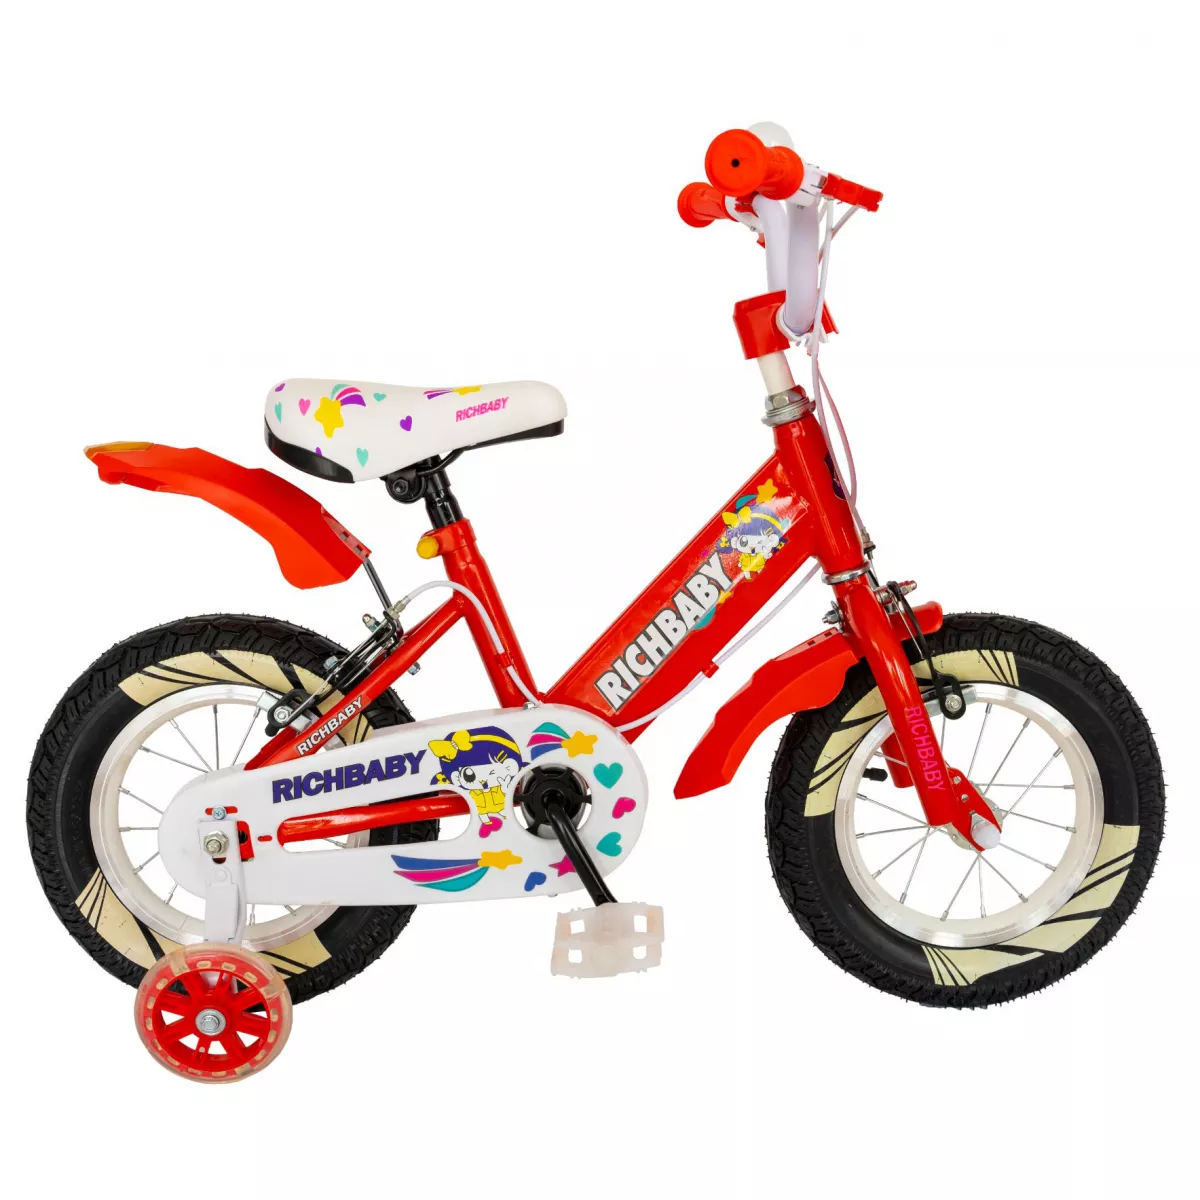 Bicicleta fete Rich Baby R1408A, roata 14", C-Brake, roti ajutatoare cu LED, 3-5 ani, rosu/alb